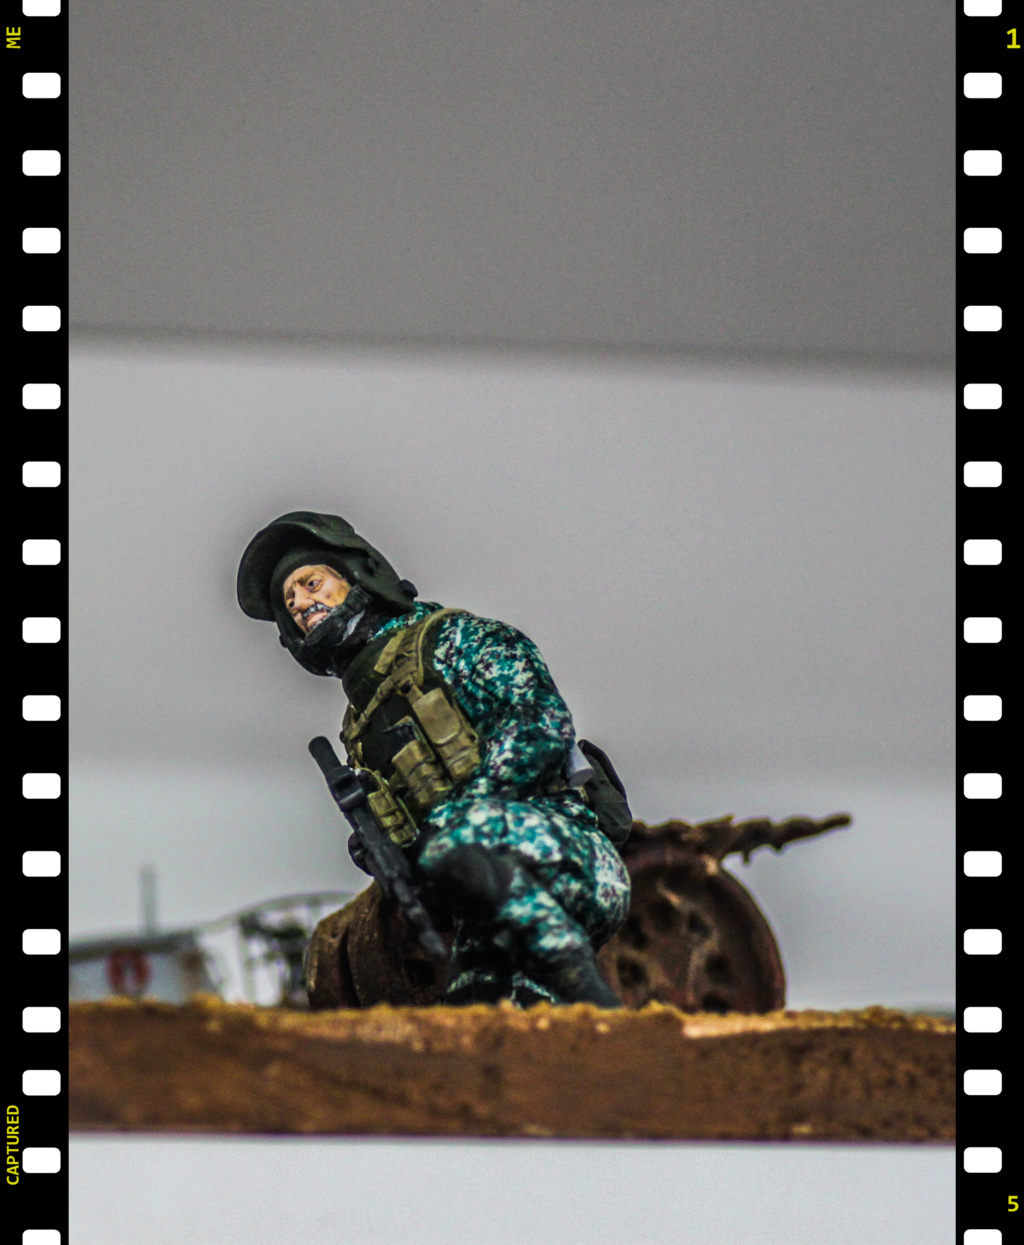 Figurine soldat ruse actuel echelle 1/16 fait par moi meme en 3d resine TERMINE Img_9105